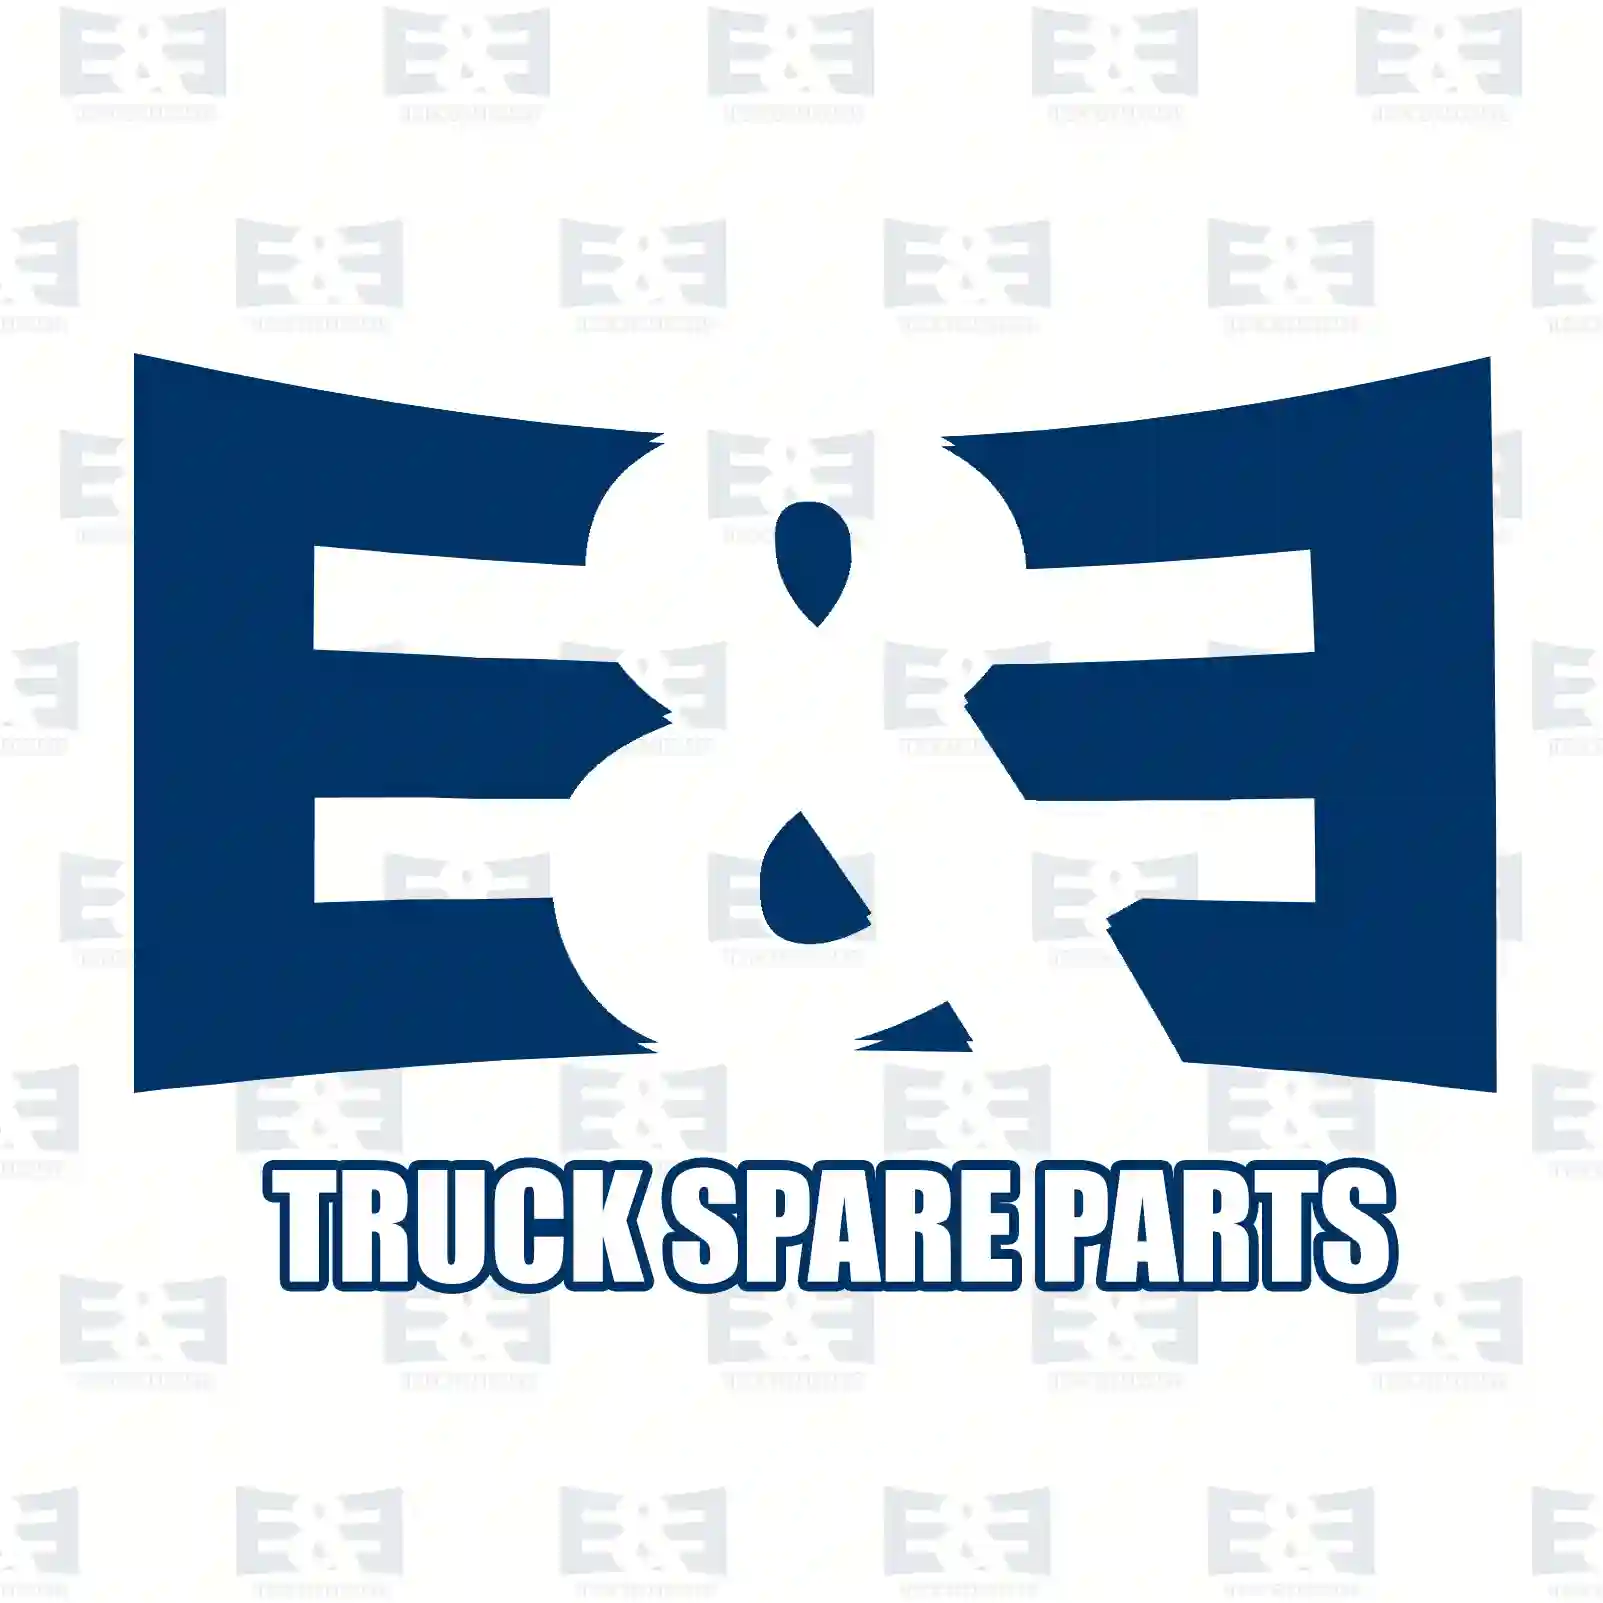 Step well case, right, 2E2289299, 2422396 ||  2E2289299 E&E Truck Spare Parts | Truck Spare Parts, Auotomotive Spare Parts Step well case, right, 2E2289299, 2422396 ||  2E2289299 E&E Truck Spare Parts | Truck Spare Parts, Auotomotive Spare Parts